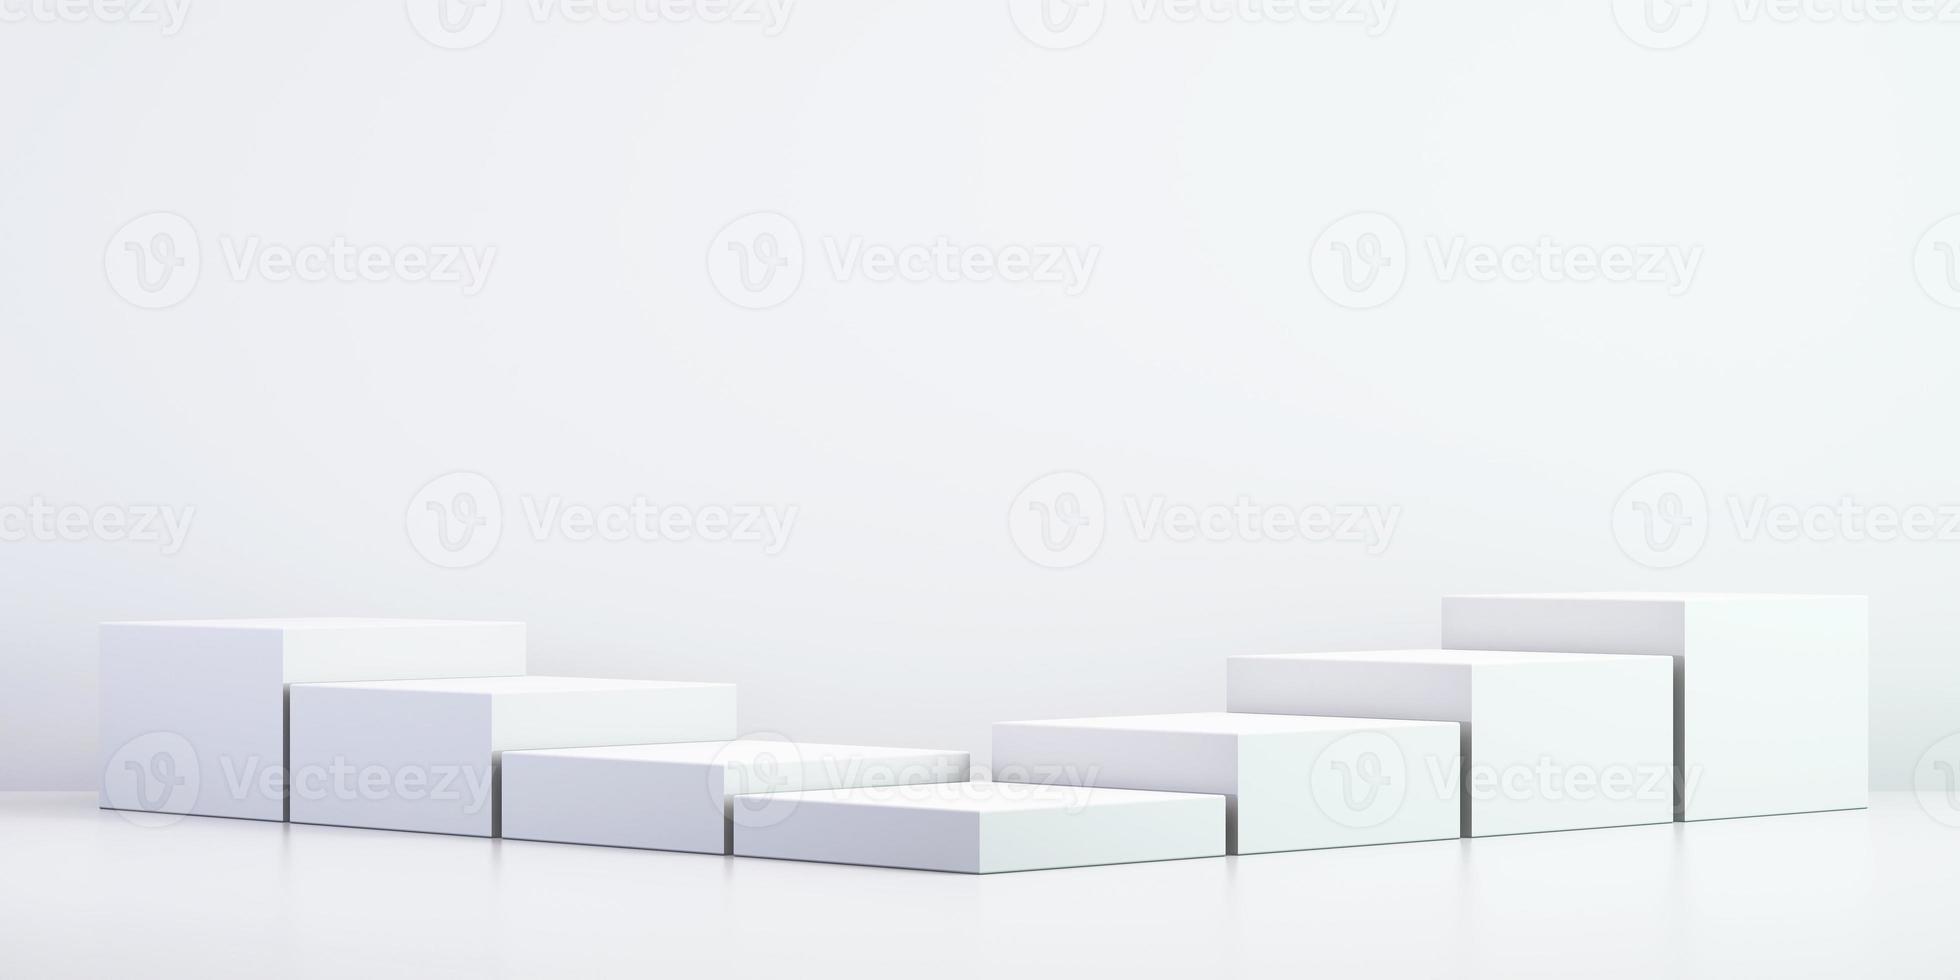 Bakgrund 3d för åtlöje upp podiet för produktpresentation, vit bakgrund, tolkning 3d foto